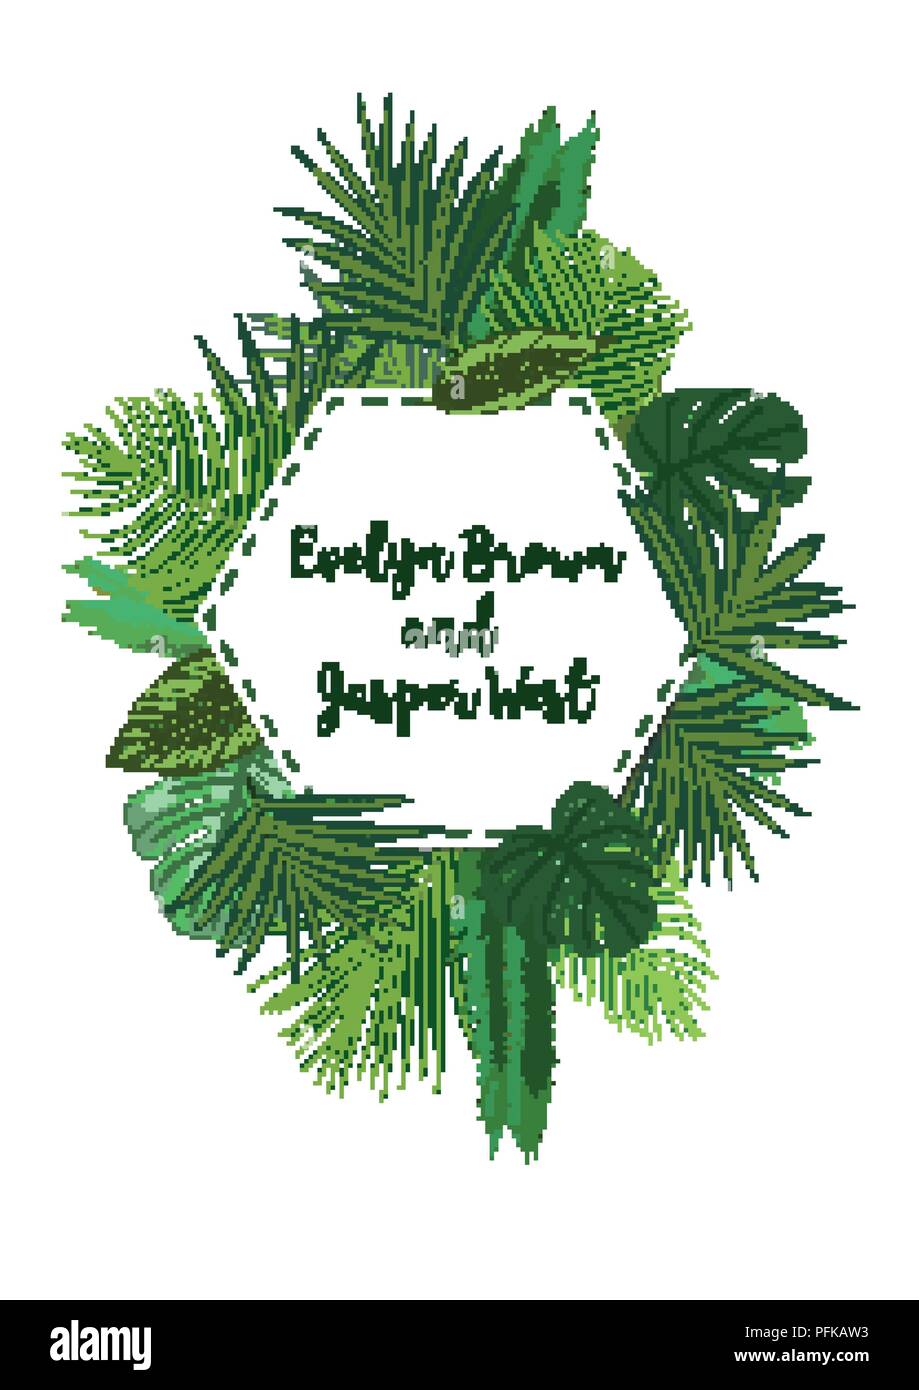 Hochzeit Einladung Karte laden, floral Design mit grünen tropischen Wald Palmenblättern, Wald, Farn Grün in eine schöne hexagonale Frame einfach. Stock Vektor